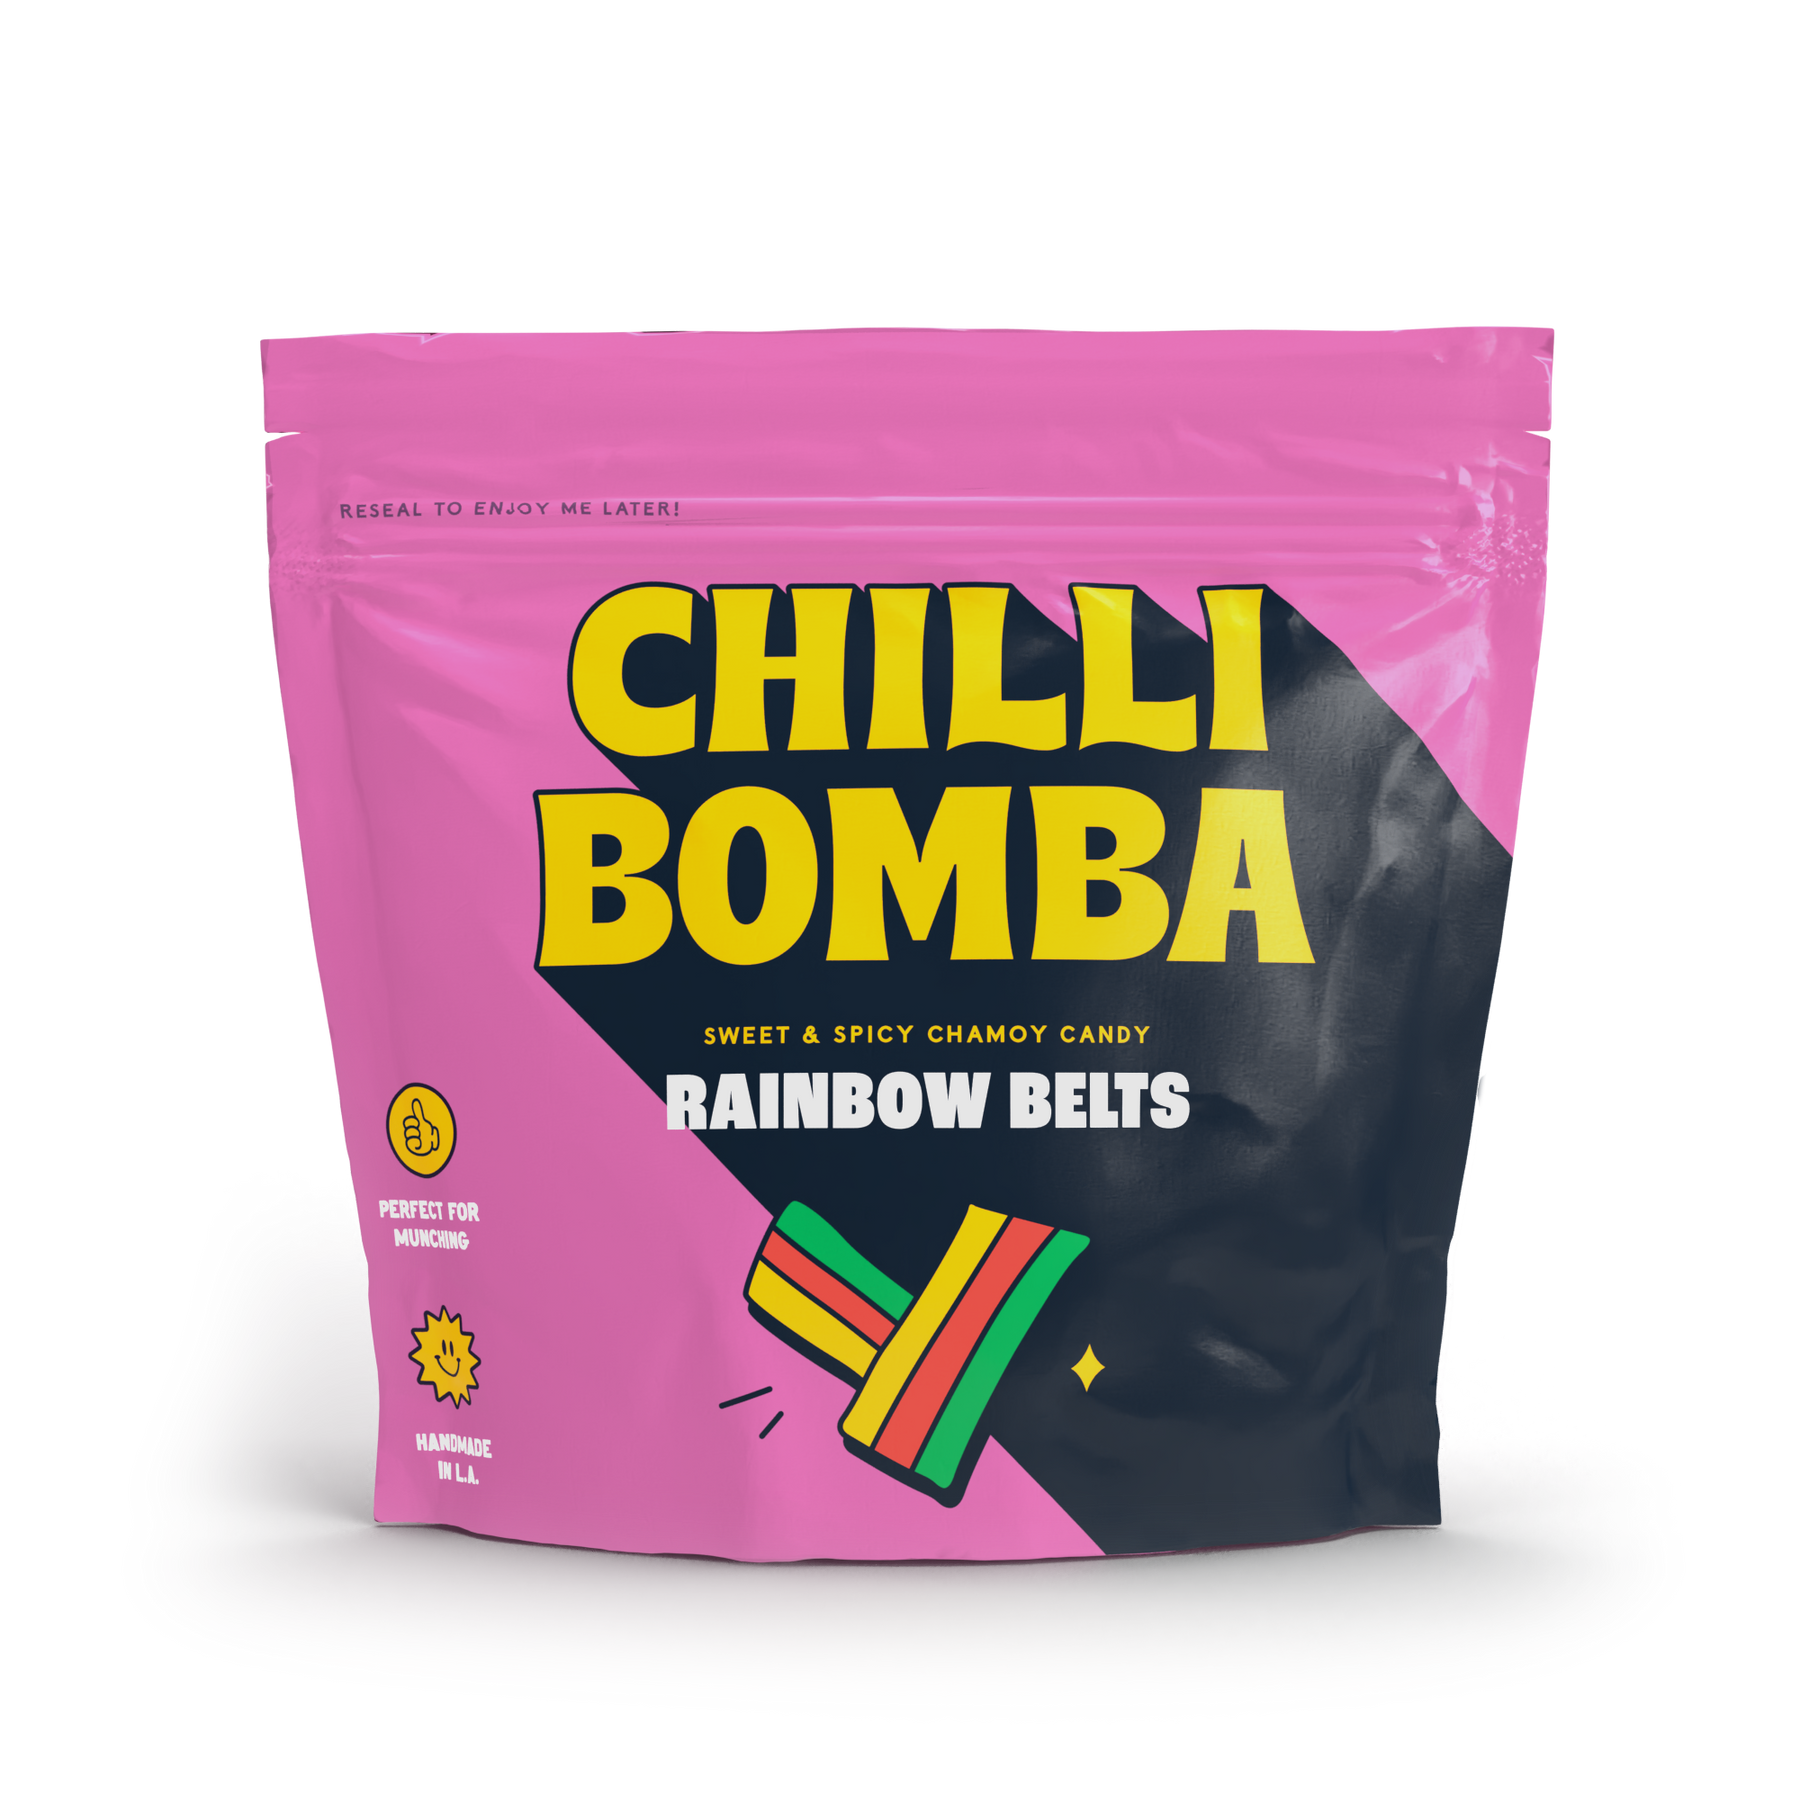 Chilli Bomba Rainbow Belts Chamoy Candy- 8oz